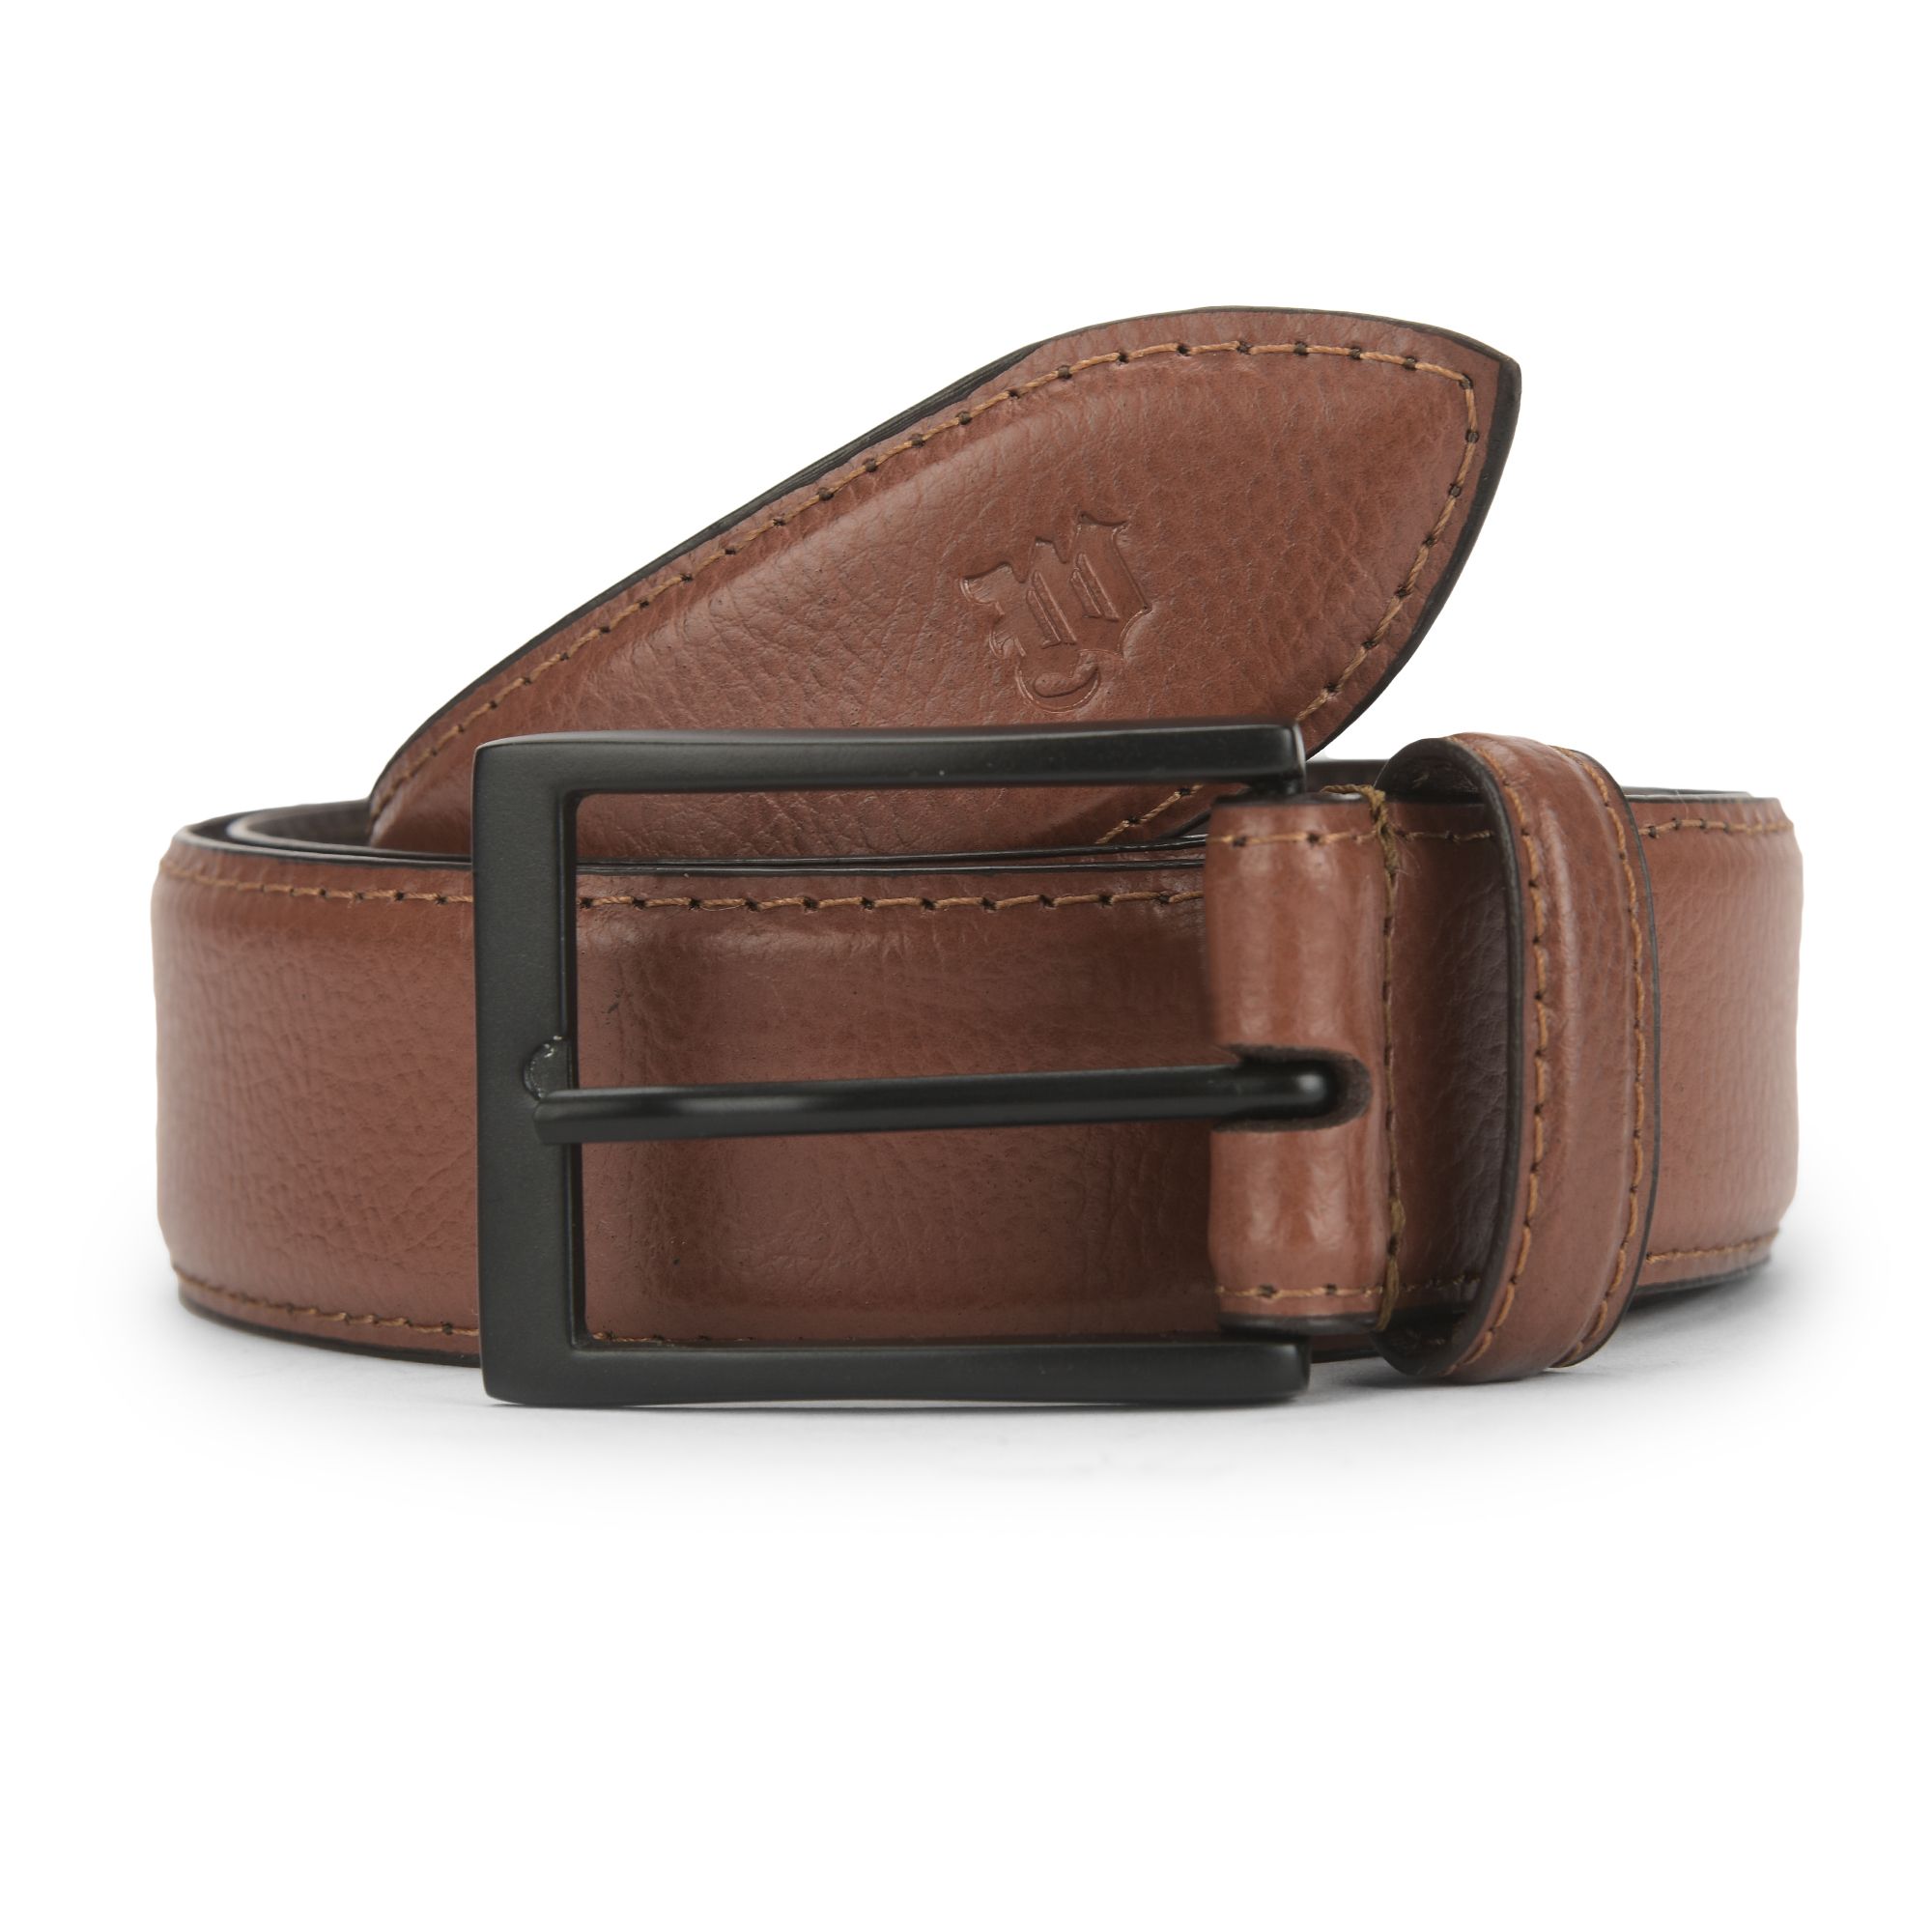 Tan Leather belt for men